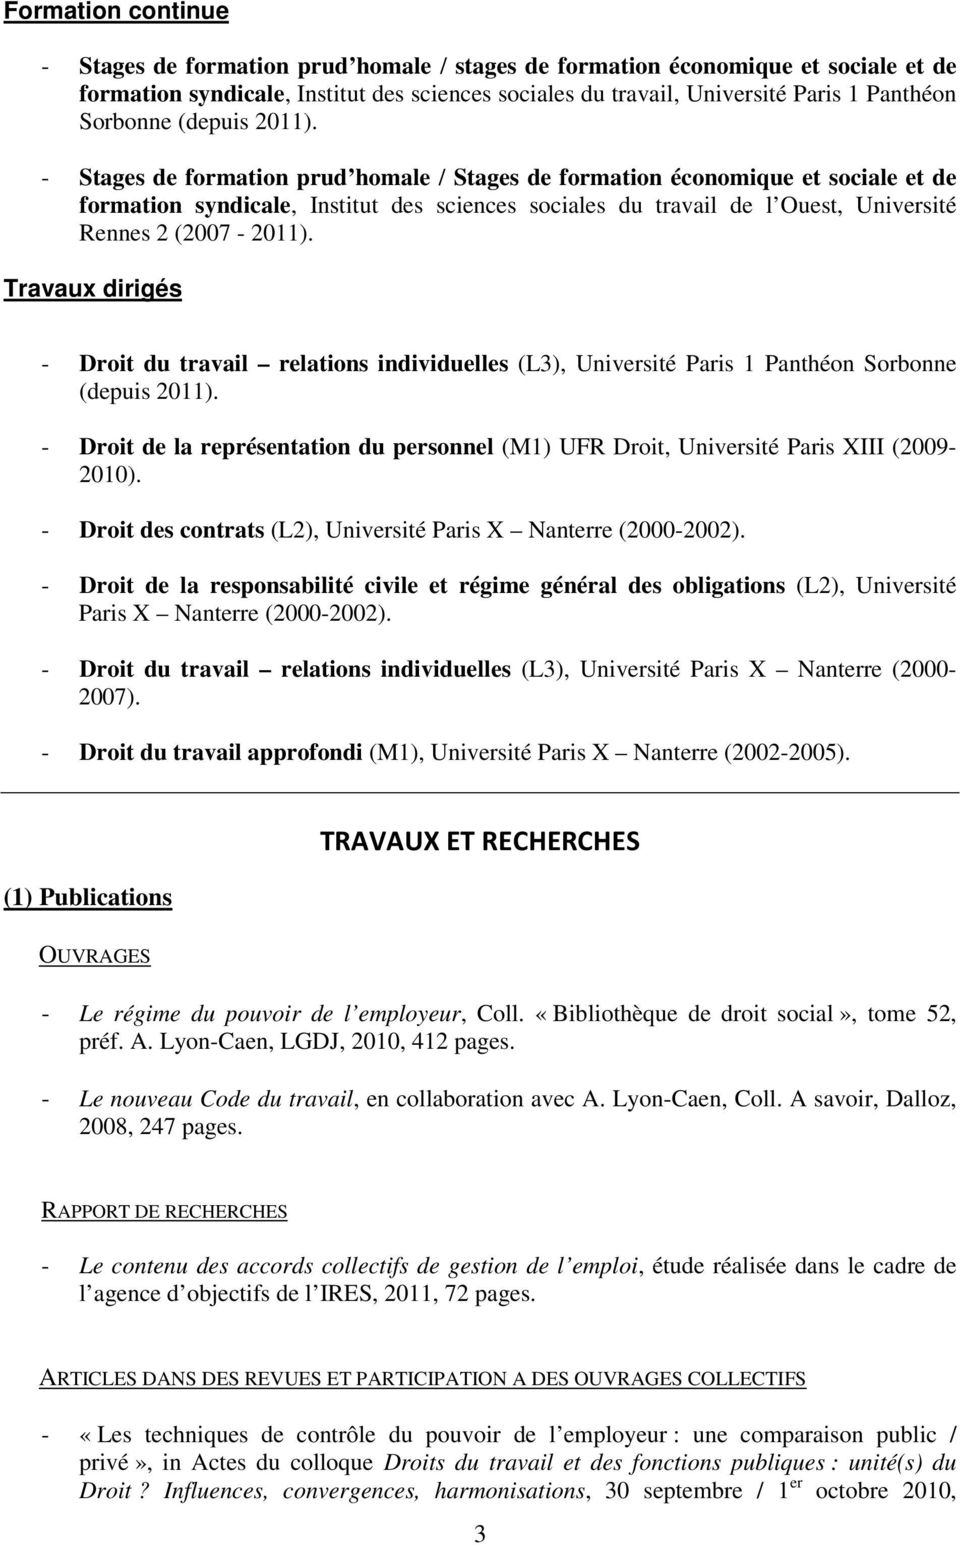 - Stages de formation prud homale / Stages de formation économique et sociale et de formation syndicale, Institut des sciences sociales du travail de l Ouest, Université Rennes 2 (2007-2011).